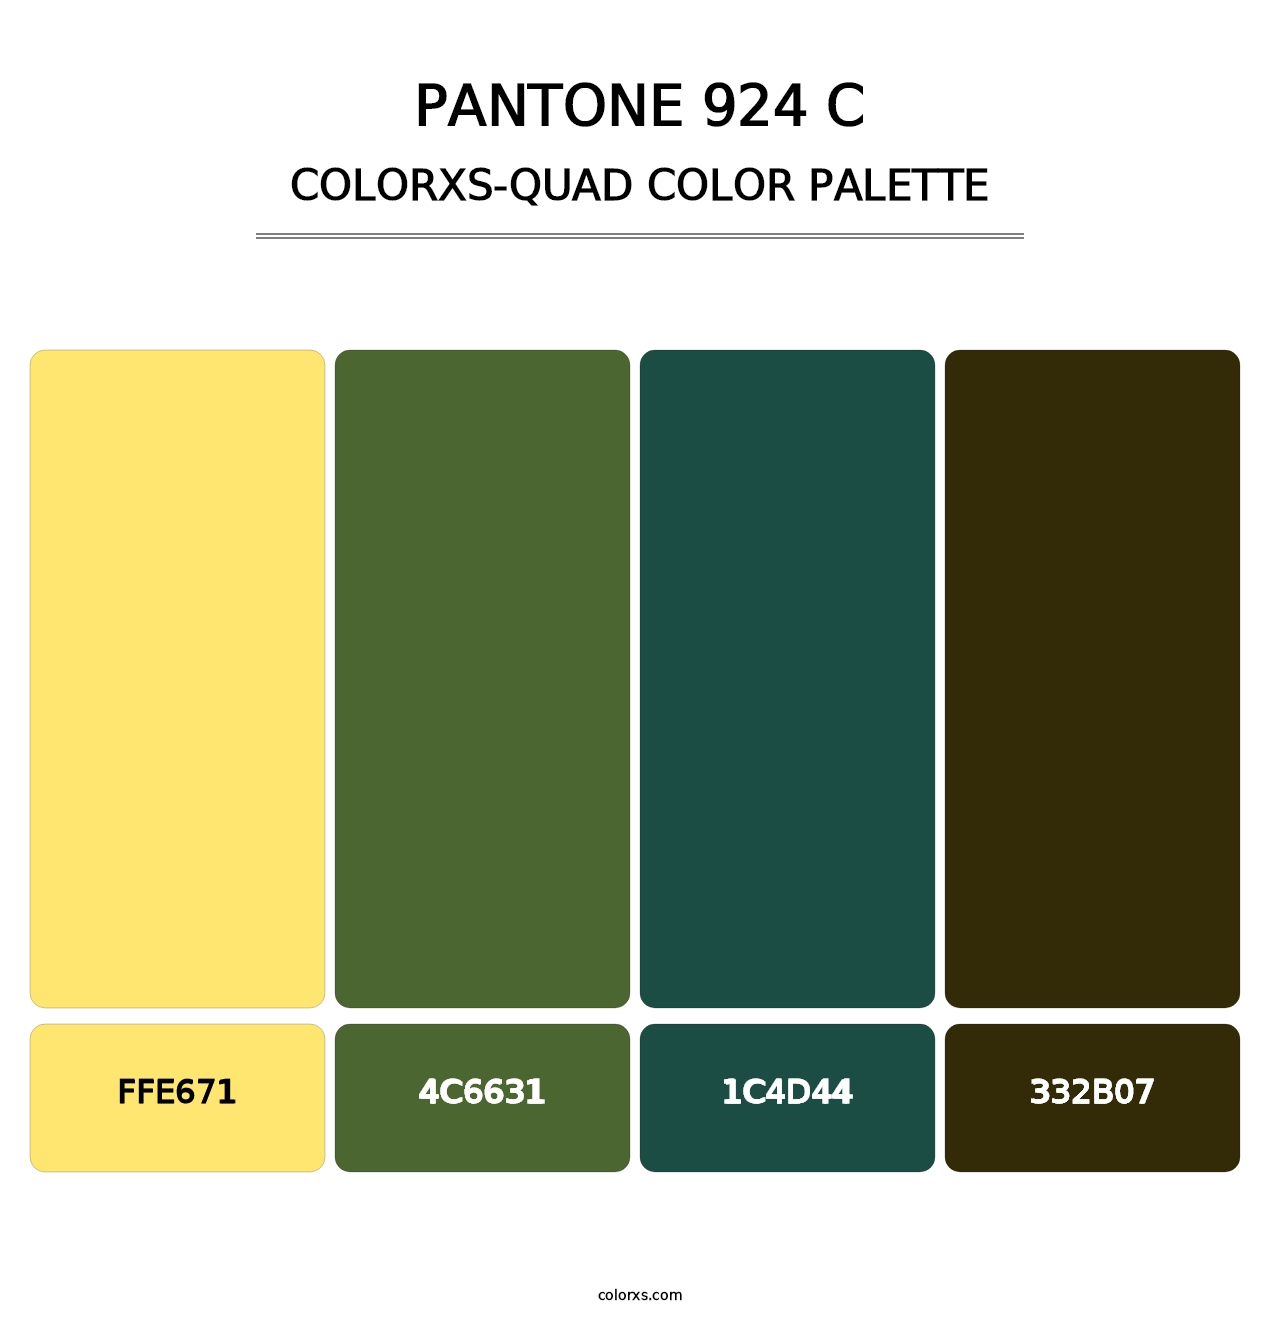 PANTONE 924 C - Colorxs Quad Palette